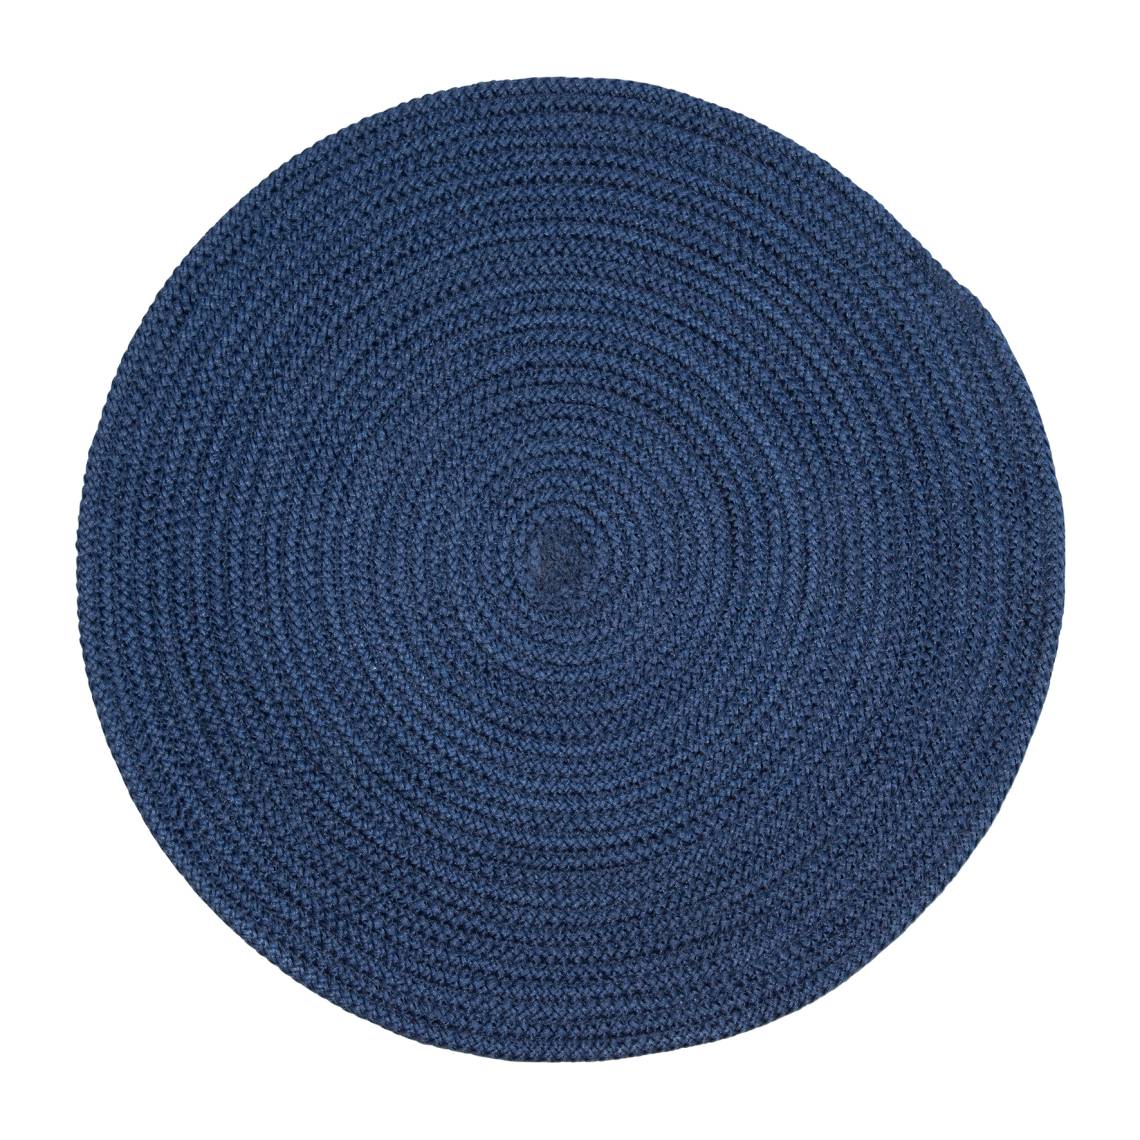 PAD - Poi Tischset blue, Ø 40 cm